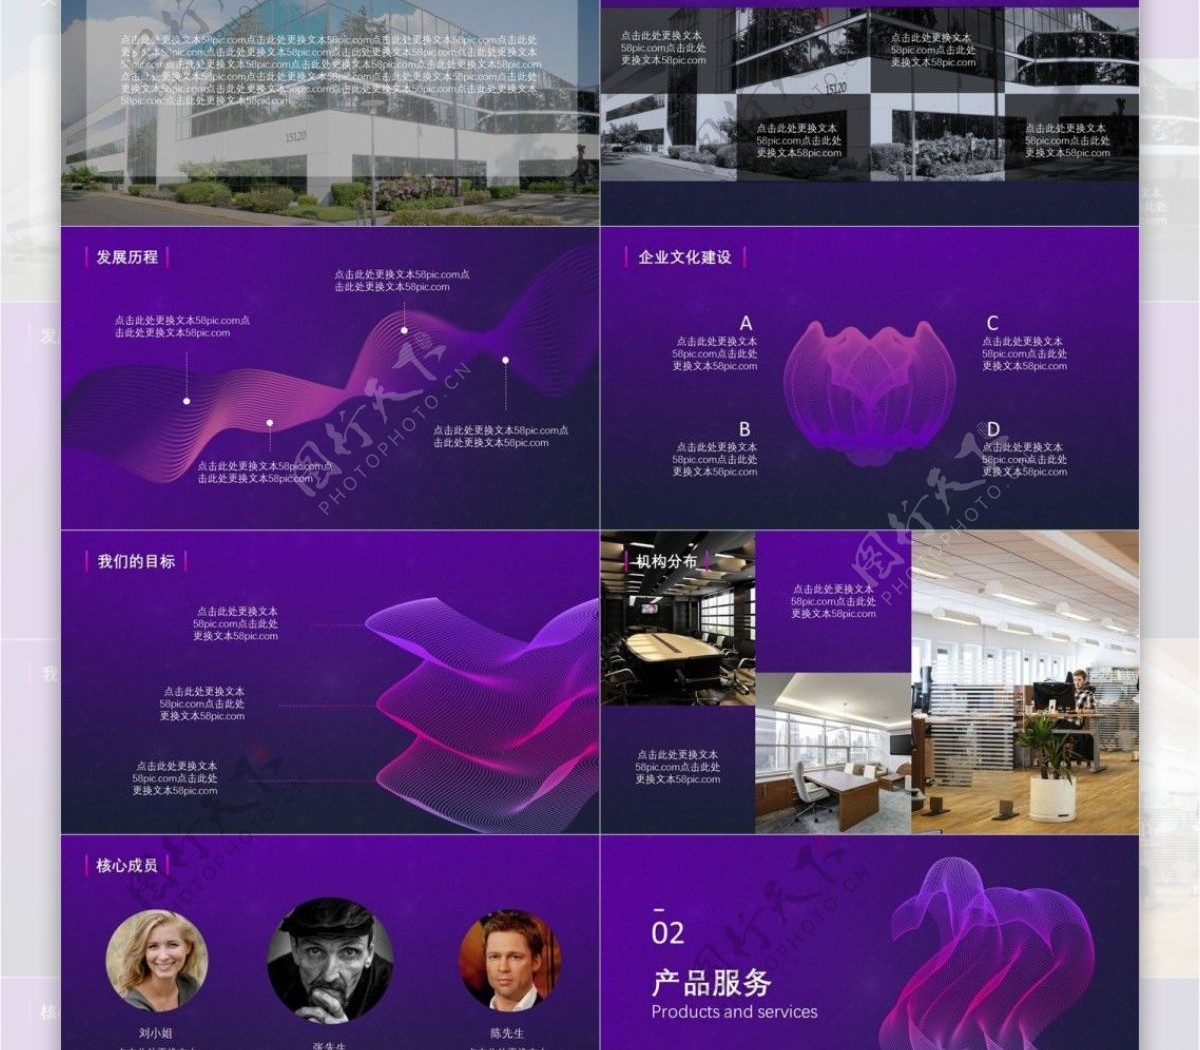 紫色高端大气企业宣传公司介绍PPT模板